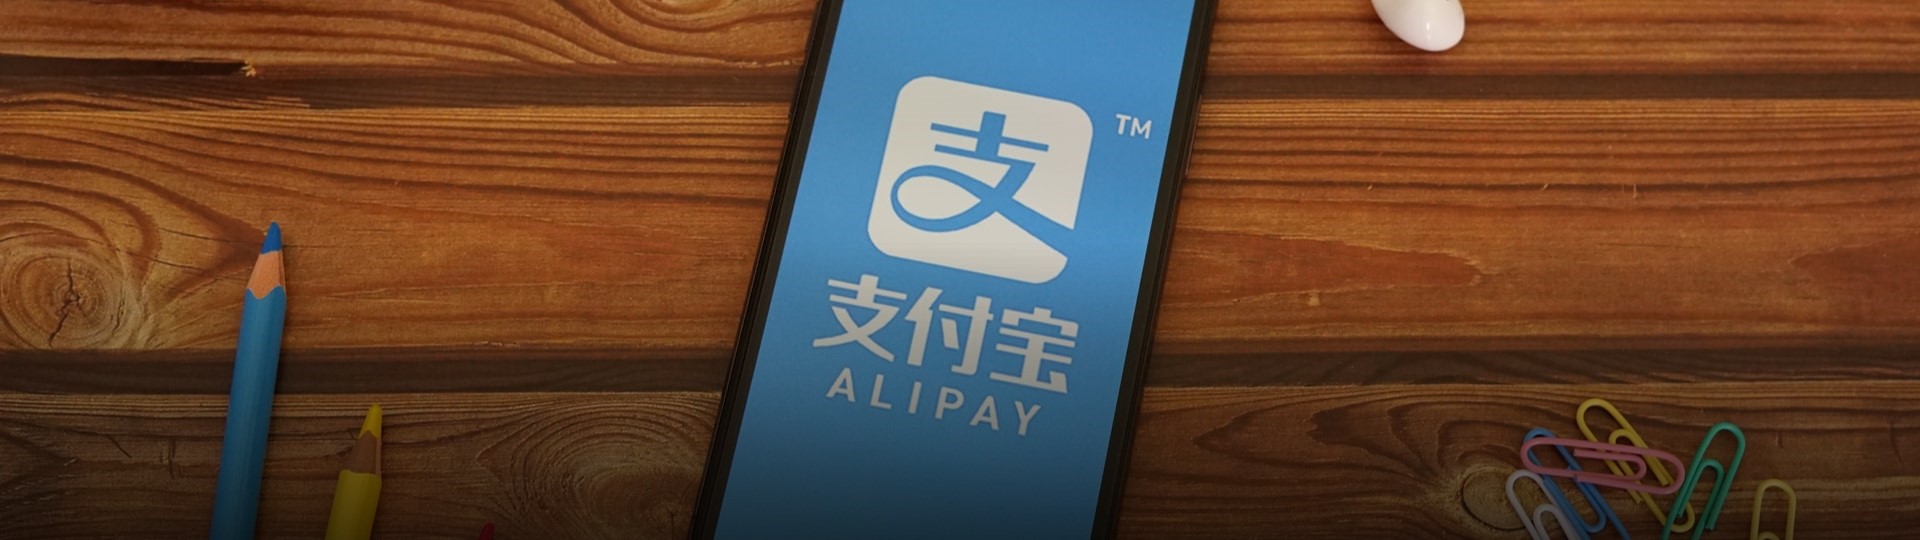 Čína plánuje rozdělit platební aplikaci Alipay